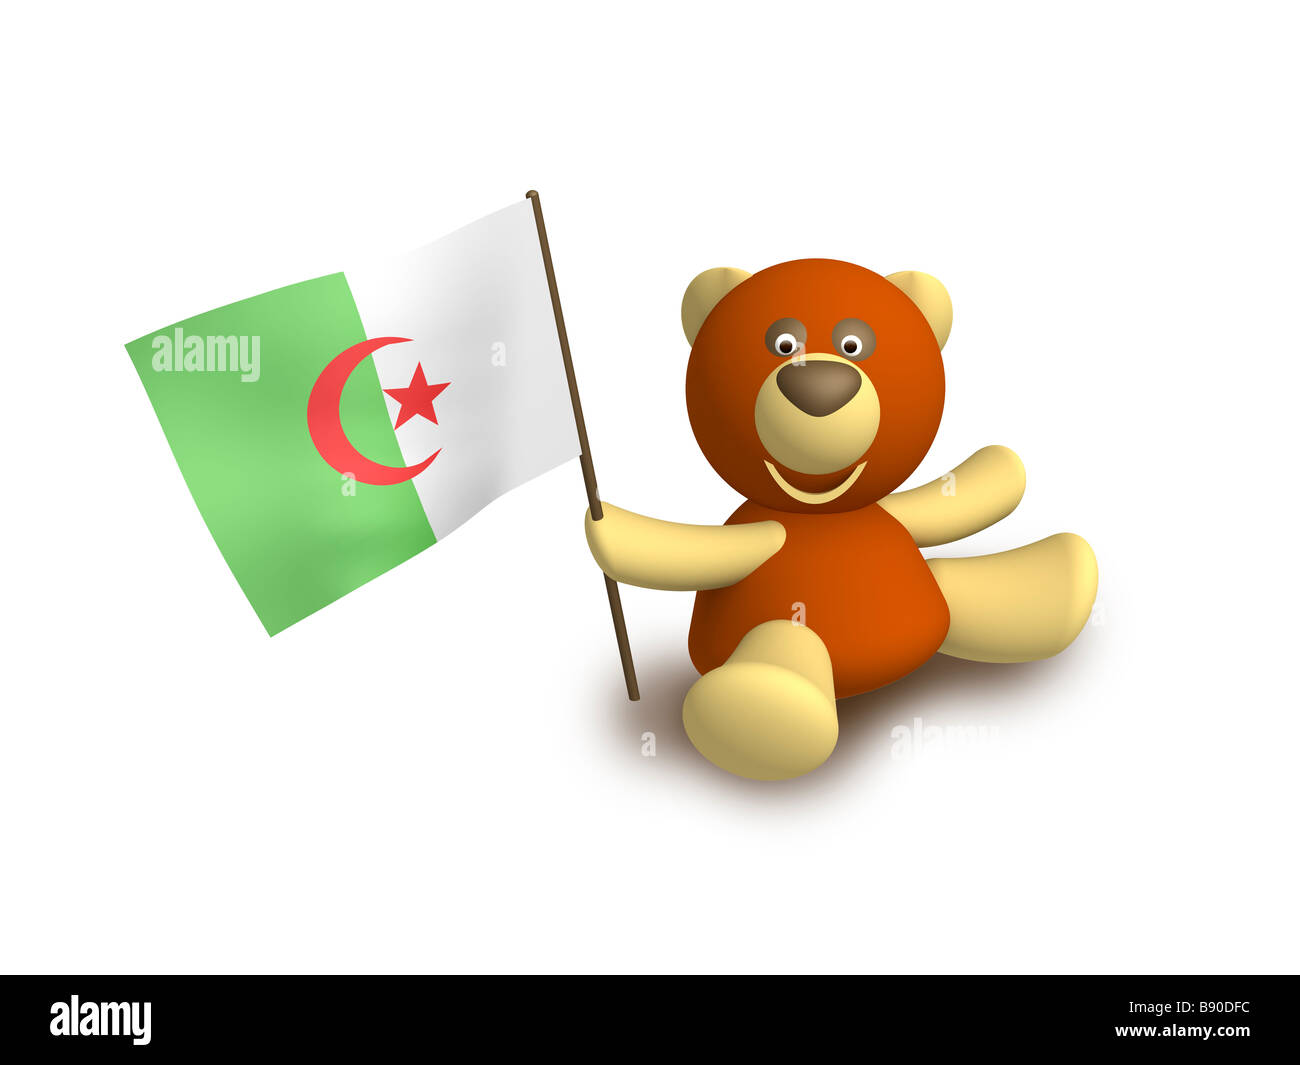 Algeria flag Stock Photo